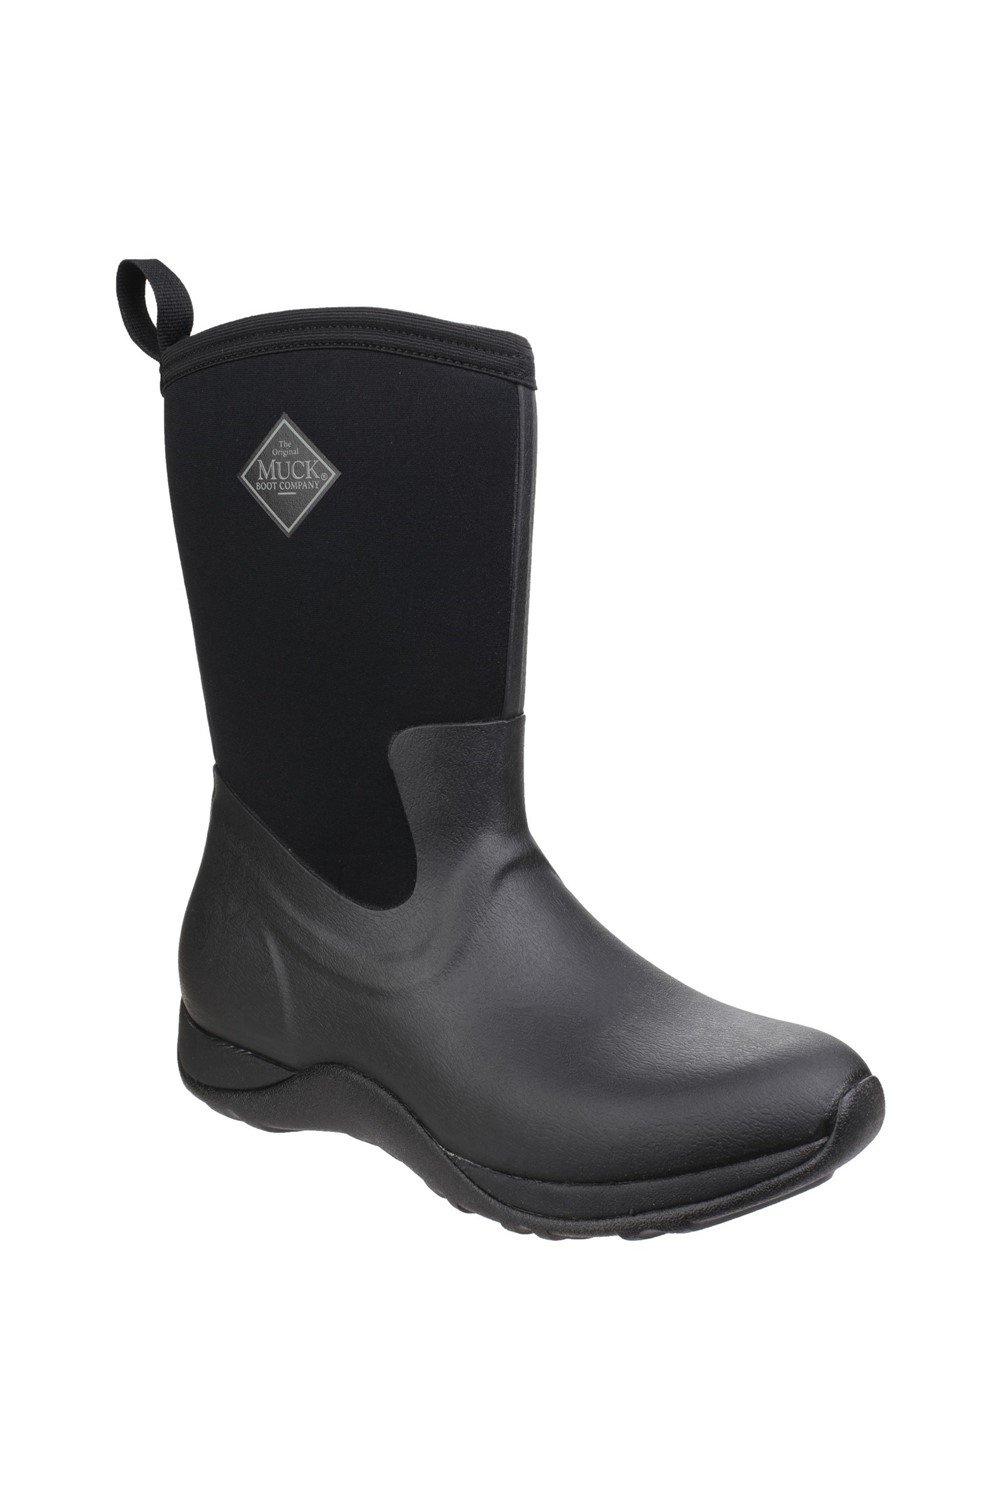 Резиновые ботинки Arctic Weekend Muck Boots, черный